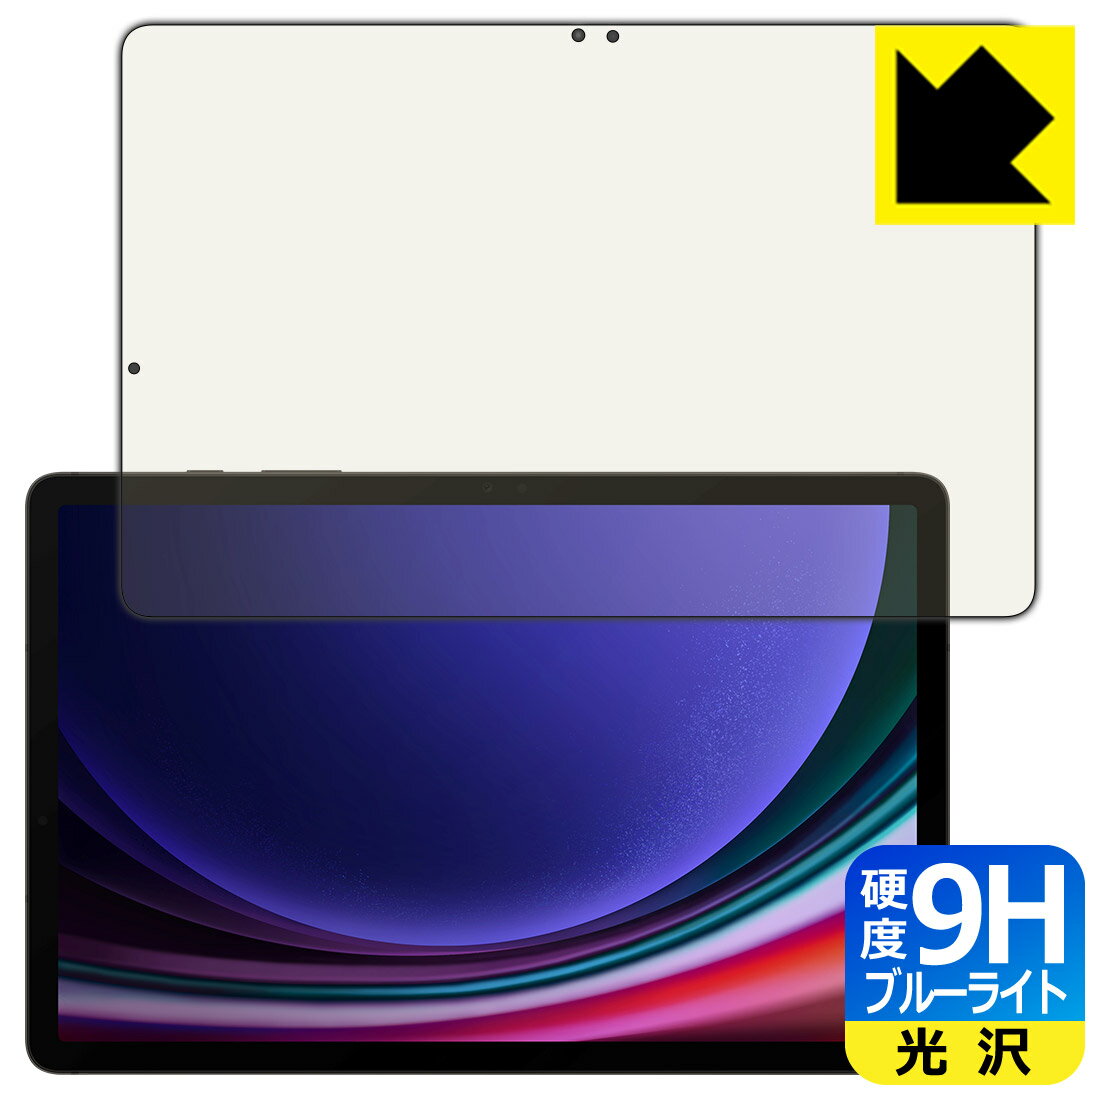 対応機種●対応機種 : Samsung Galaxy Tab S9 (ギャラクシー タブ S9)専用の商品です。●製品内容 : 画面用フィルム1枚・クリーニングワイプ1個　　※画面での指紋認証に対応しています。●表面硬度9HのPETフィルム...